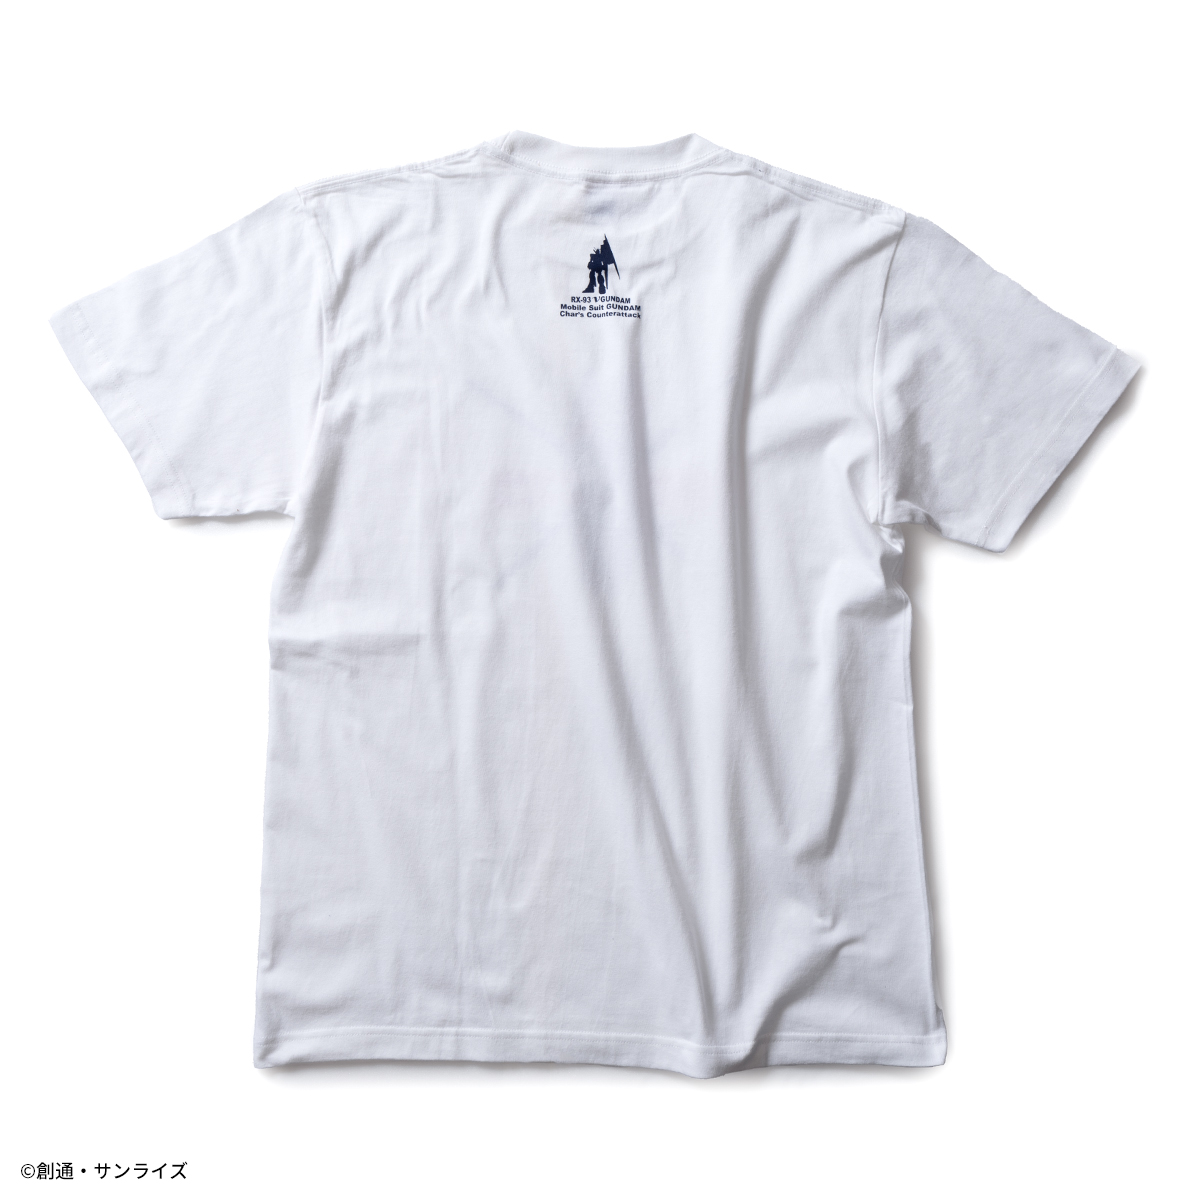 『機動戦士ガンダム 逆襲のシャア』より新作アパレルコレクションを展開 Tシャツ、長袖Tシャツ、ジップパーカーの新柄が登場！